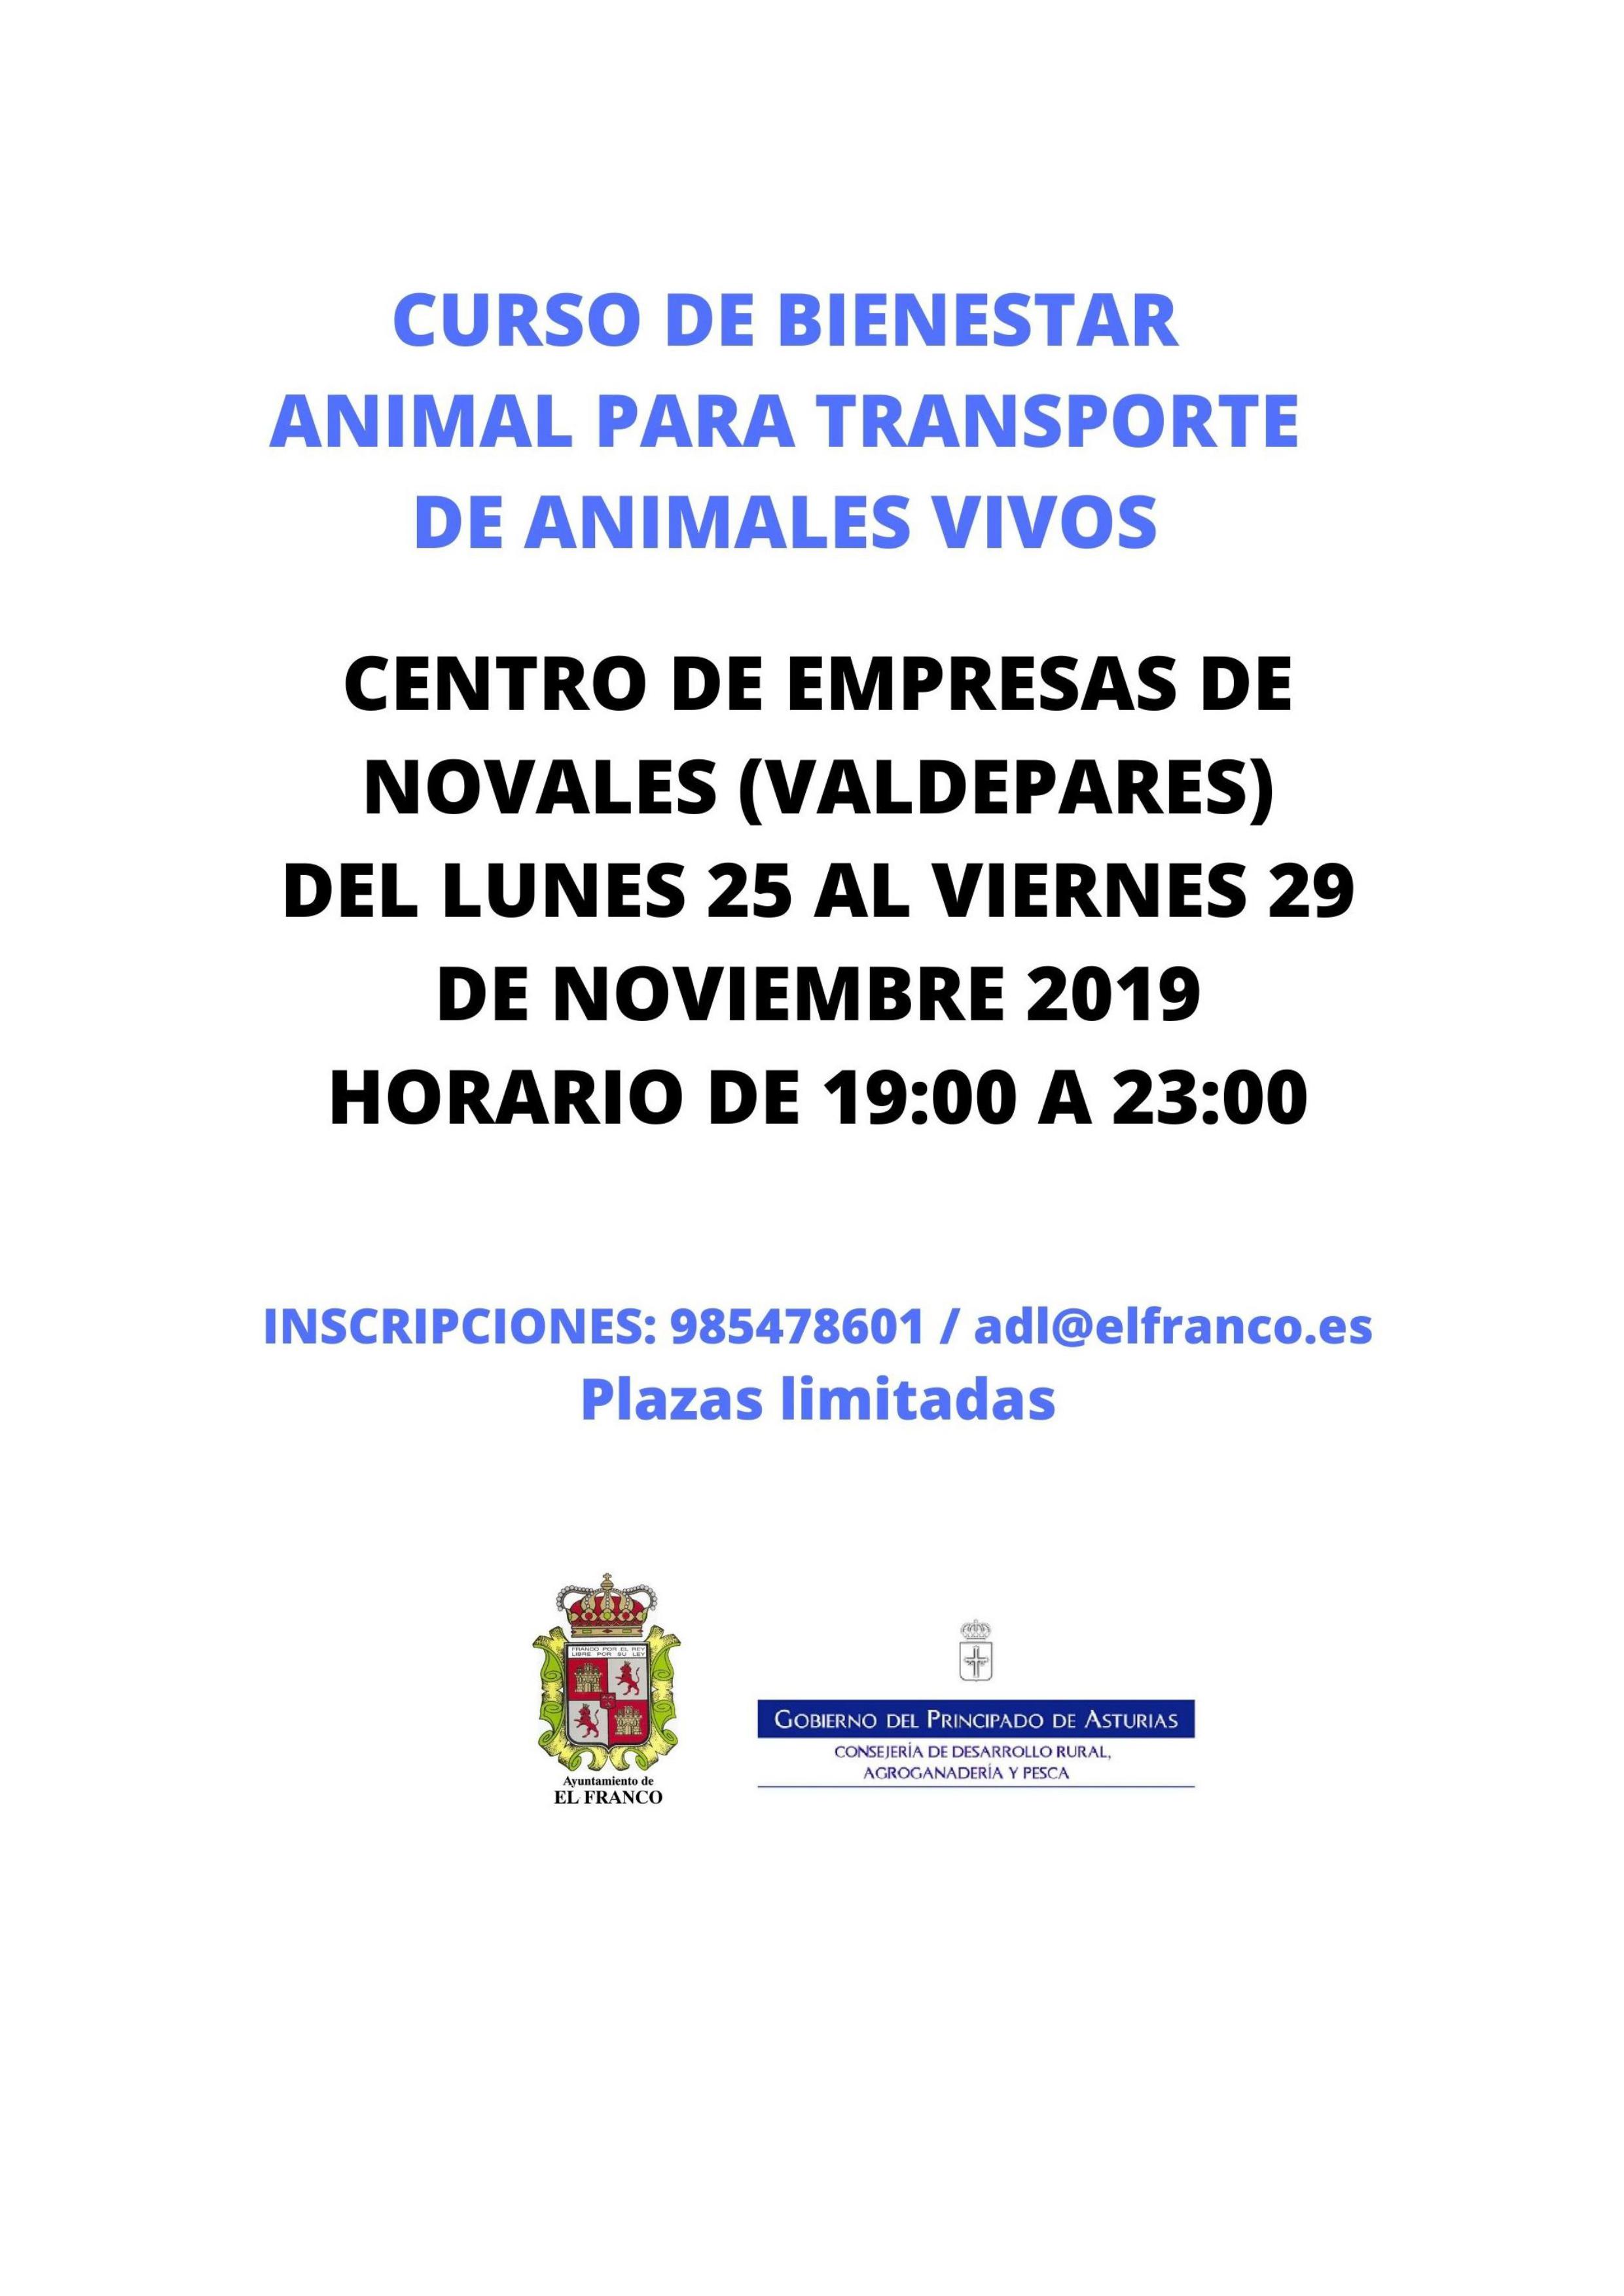 CURSO DE BIENESTAR ANIMAL PARA TRANSPORTE DE ANIMALES VIVOS